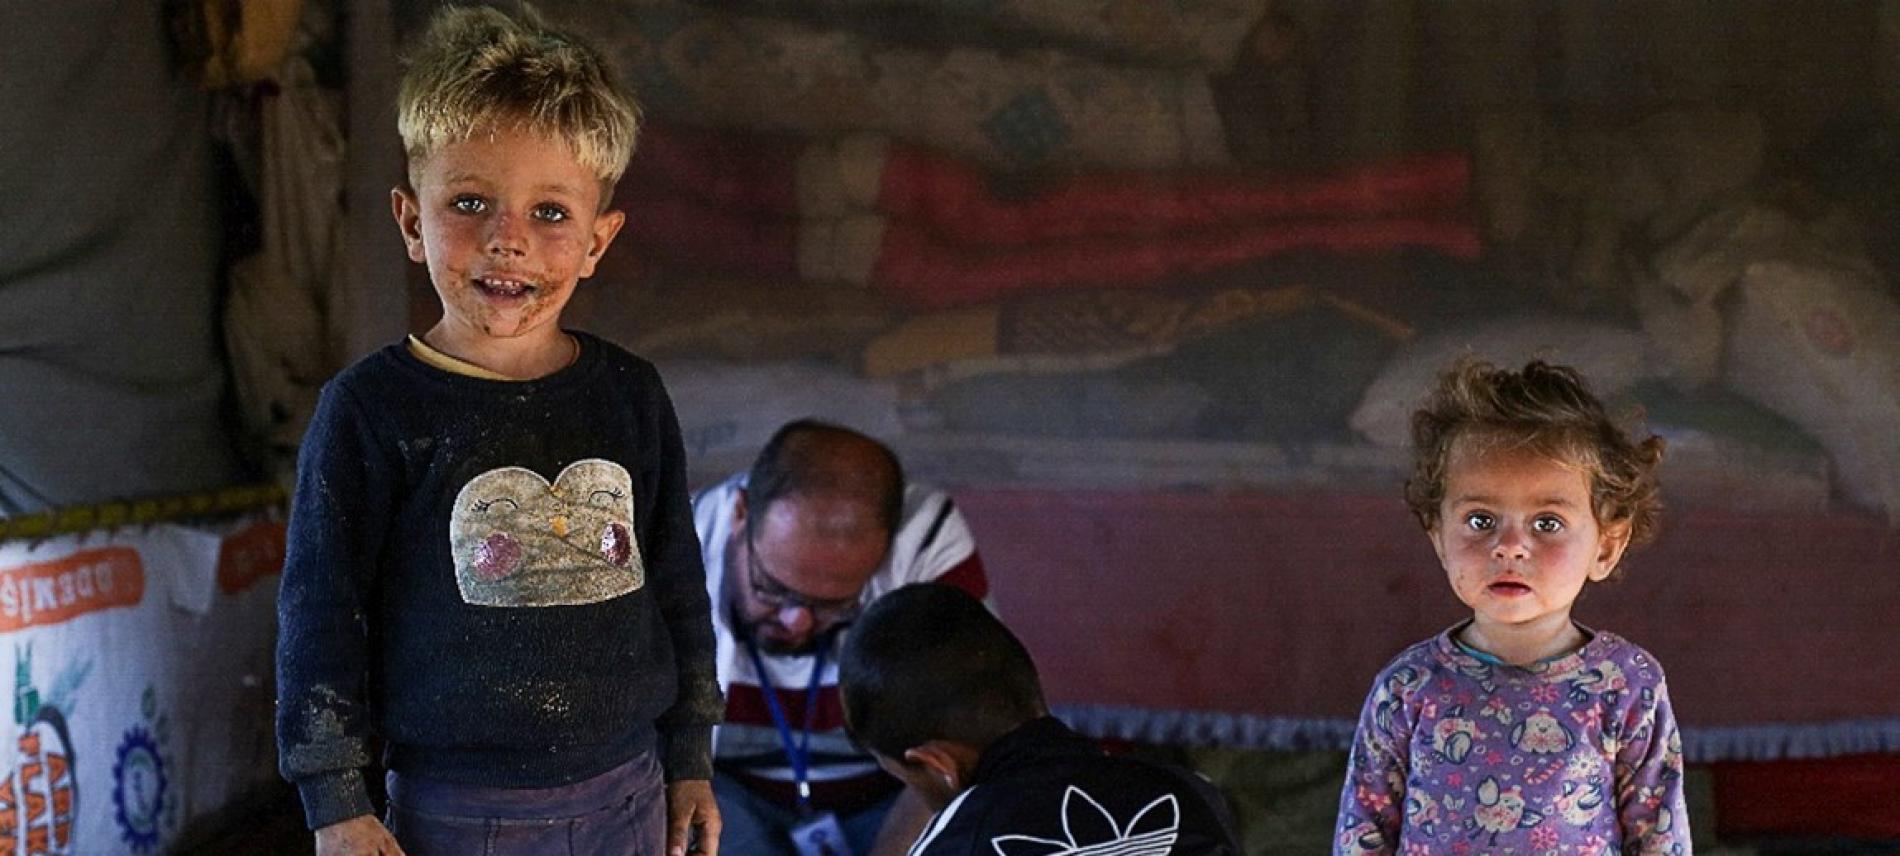 Ärzte der Welt versorgt in der Türkei auch geflüchtete Menschen, wie beispielsweise aus Syrien. Foto: Dünya Doktorlari Derneği / Ärzte der Welt Türkei